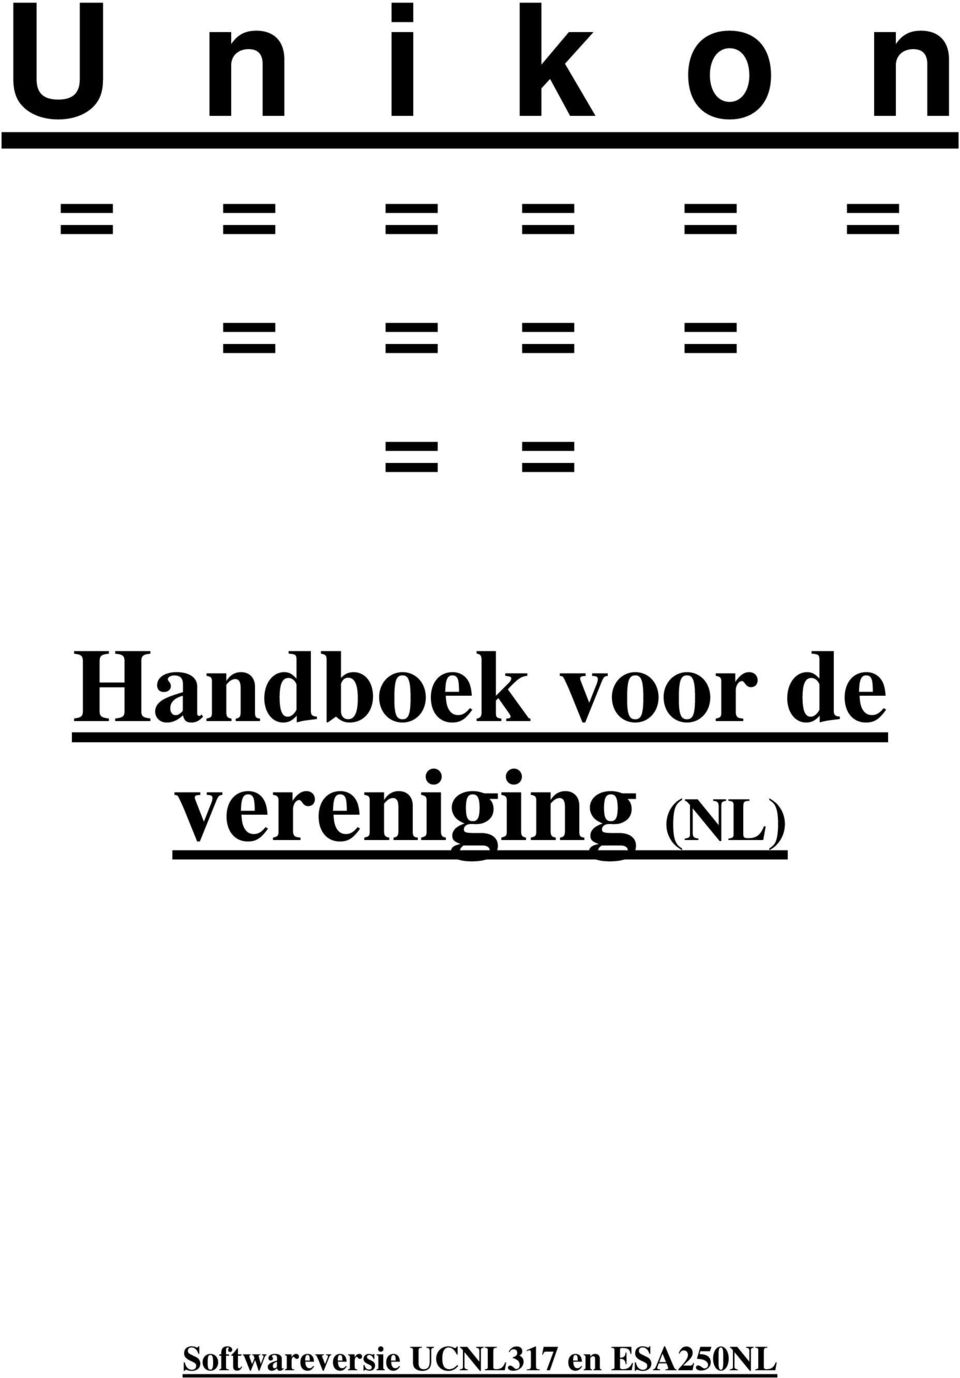 de vereniging (NL)